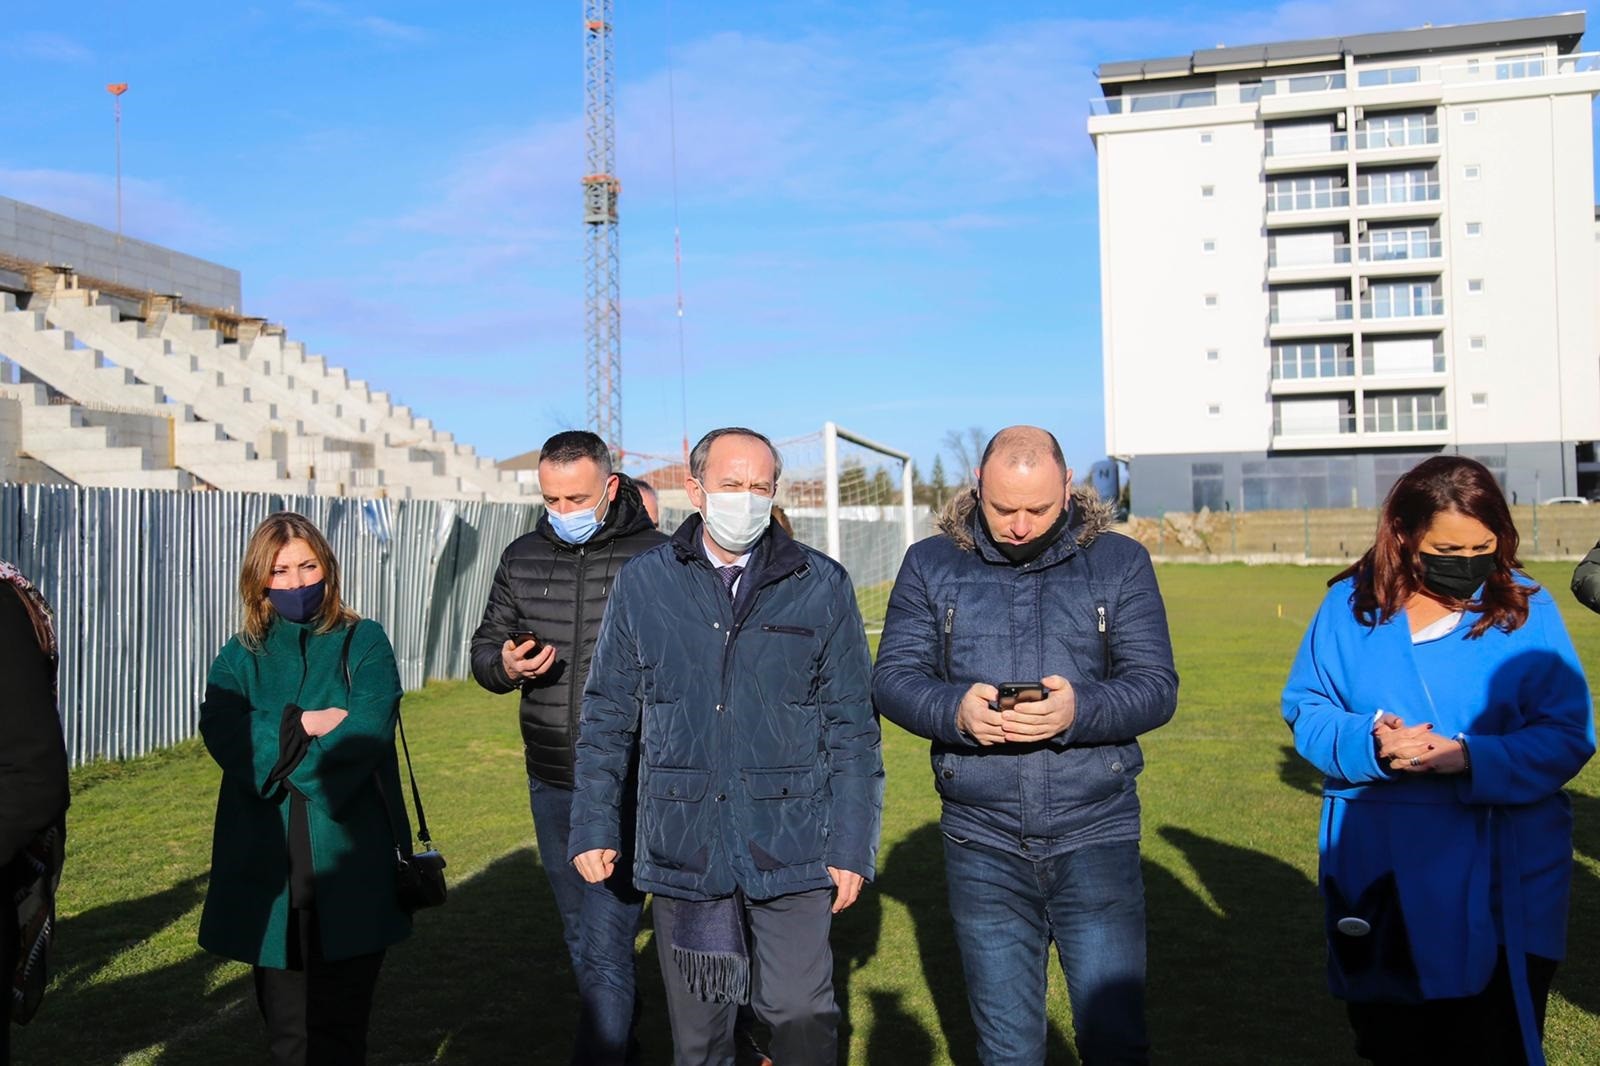 Me renovimin e stadiumit po kompletohet infrastruktura sportive në Gjakovë  